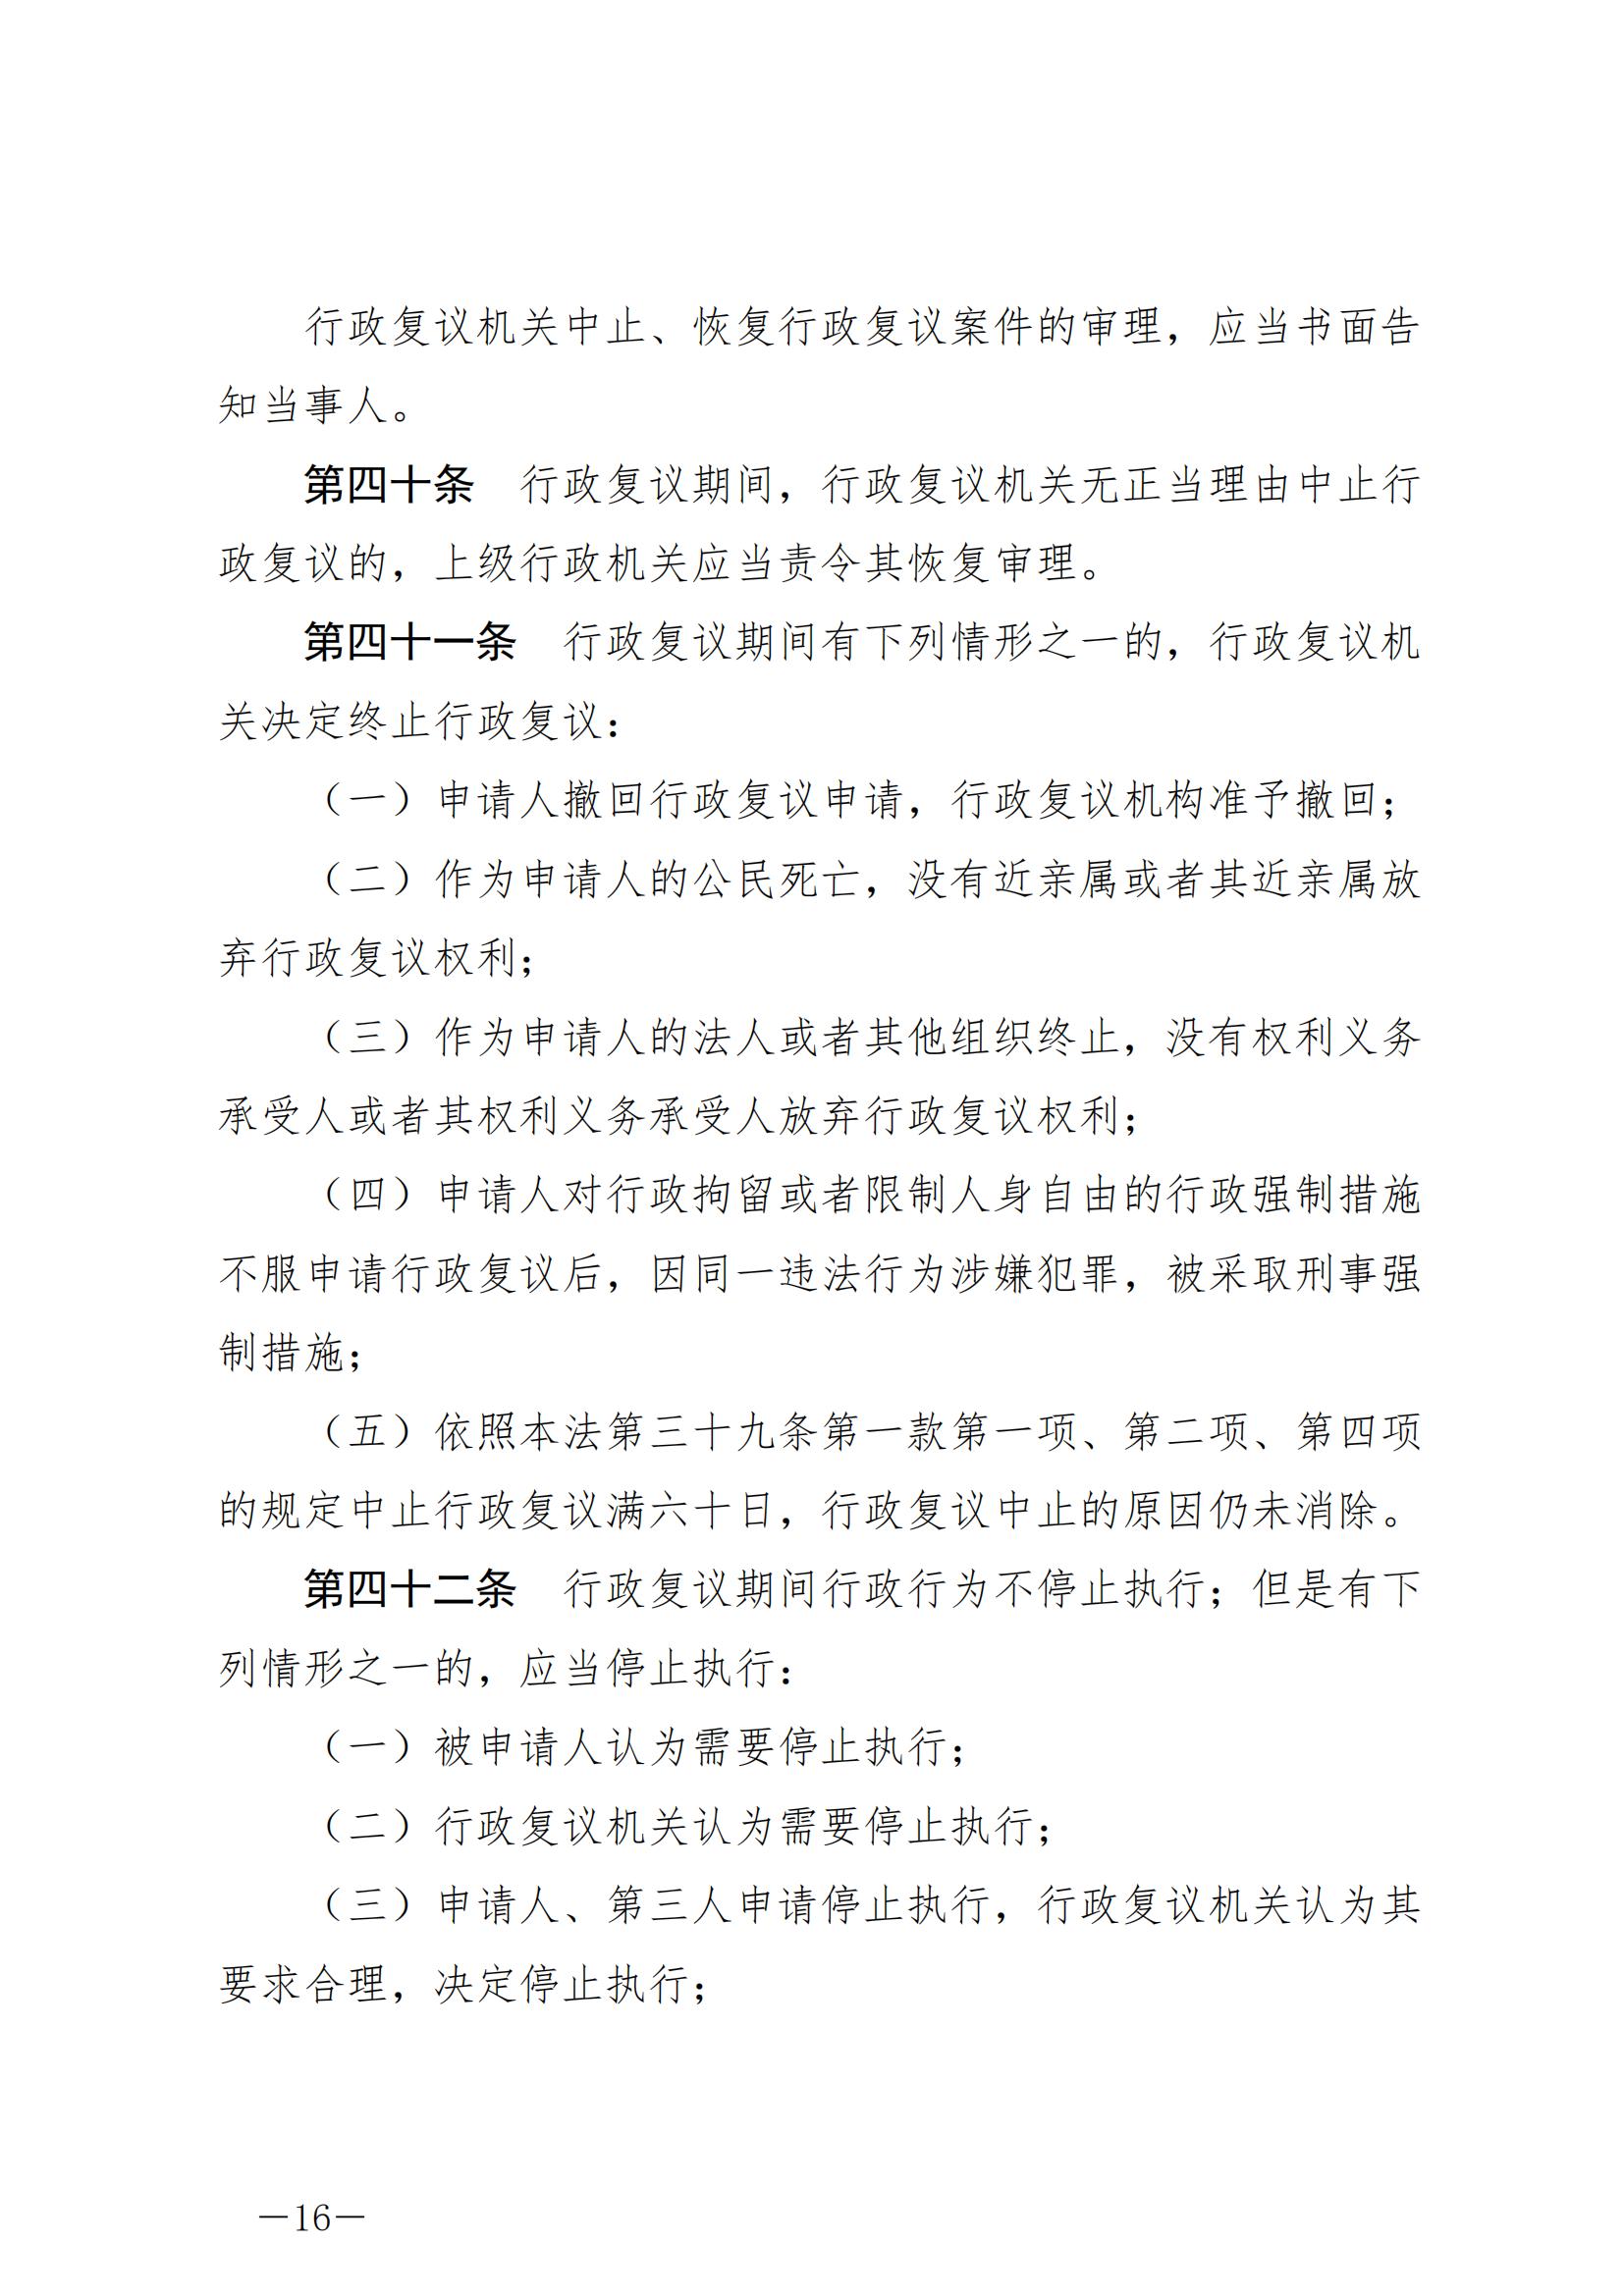 《中华人民共和国行政复议法》_20231204154310_15.jpg